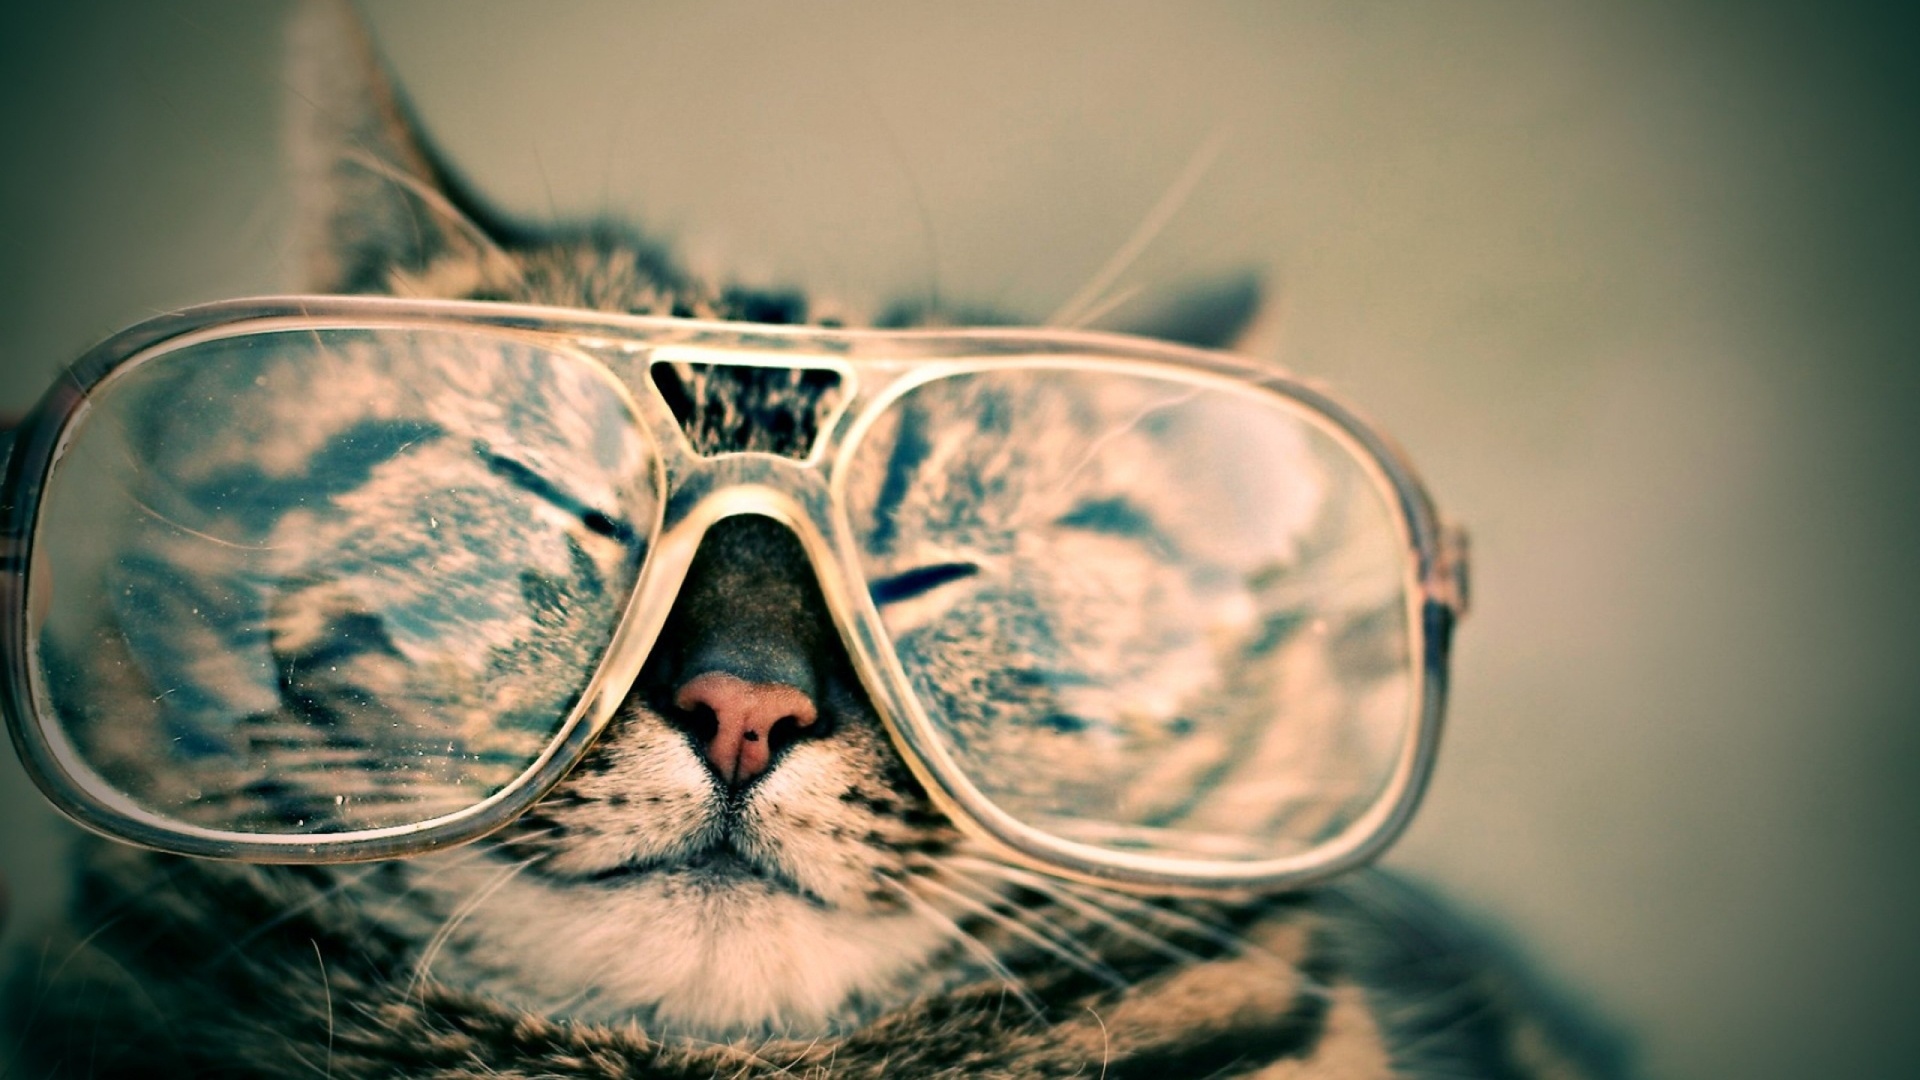 download wallpaper: kat met een grote bril wallpaper